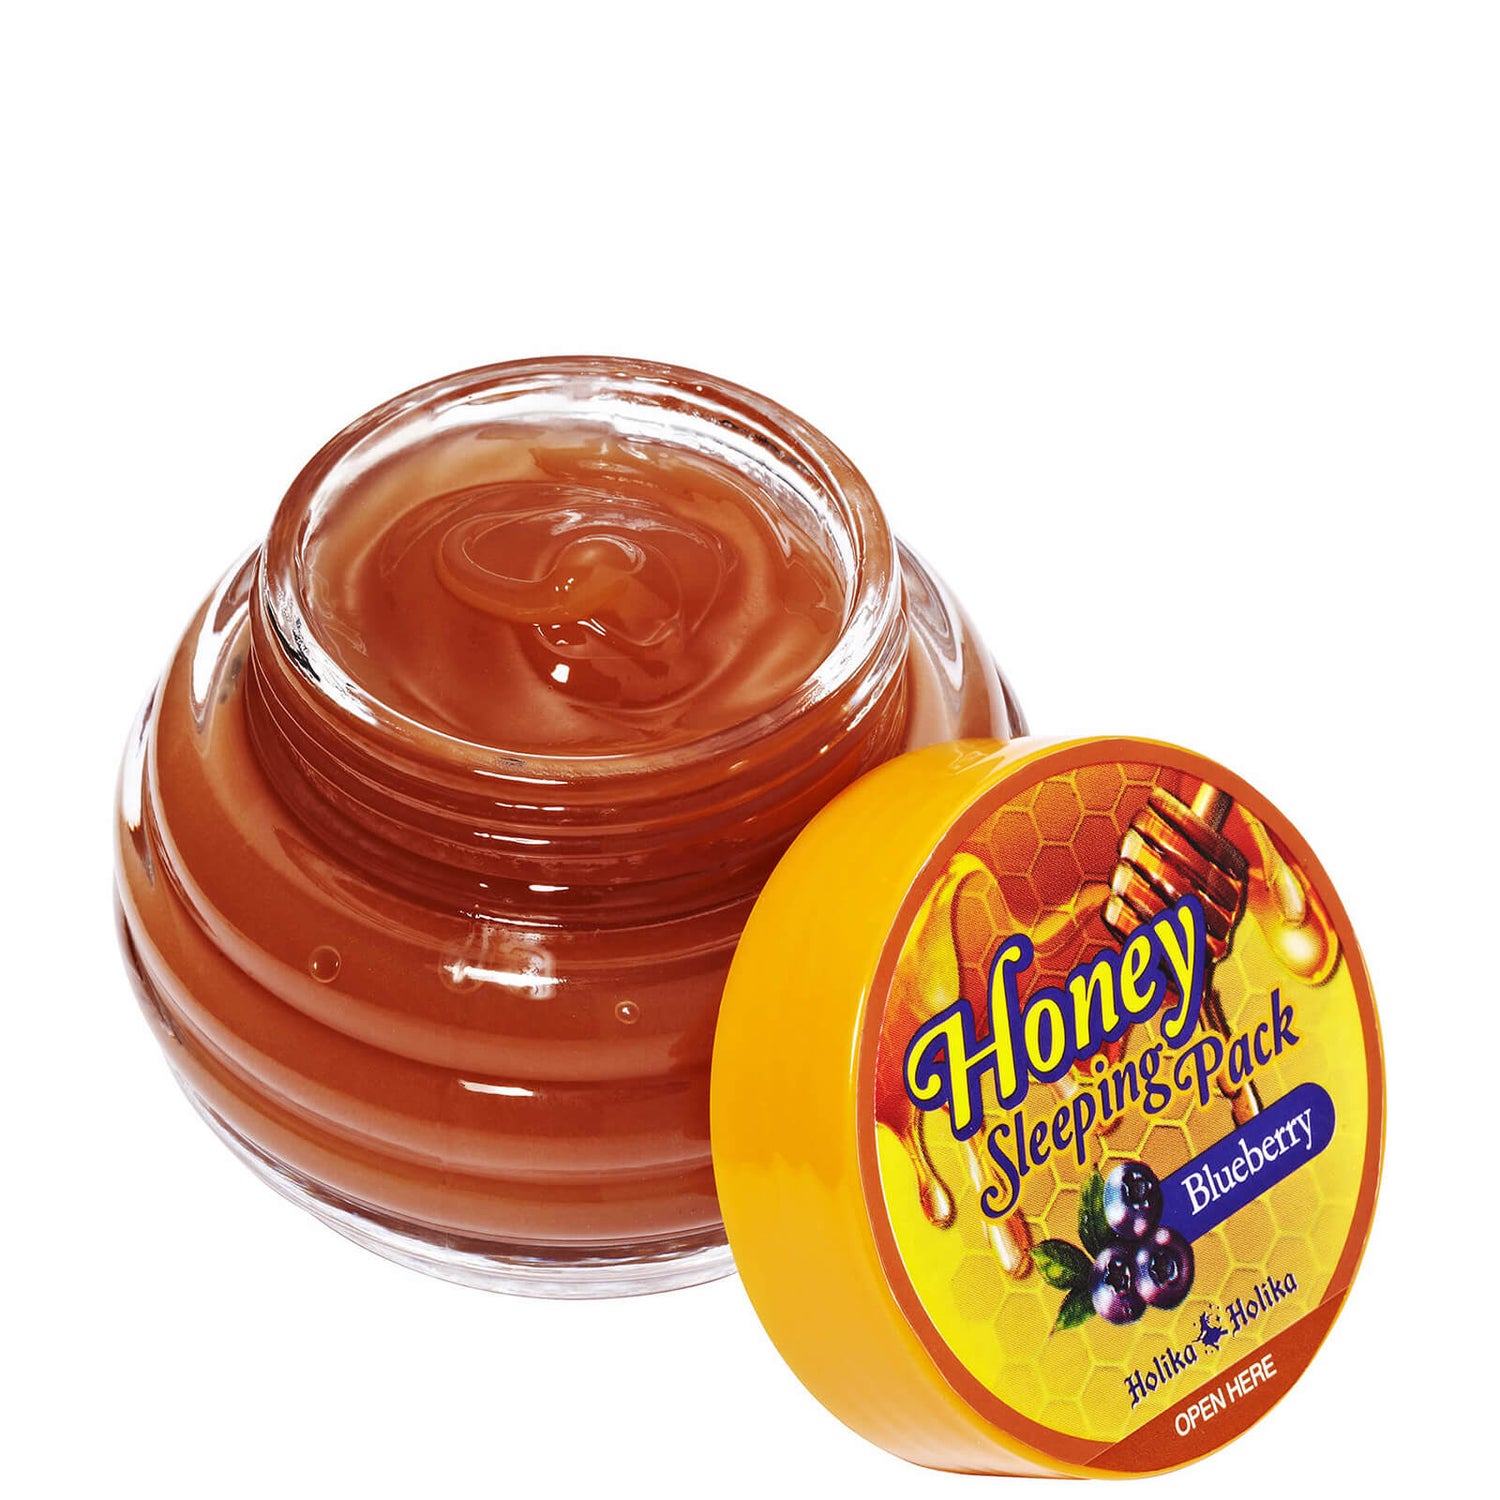 Mascarilla de noche Honey Sleeping Pack de Holika Holika (arándano)